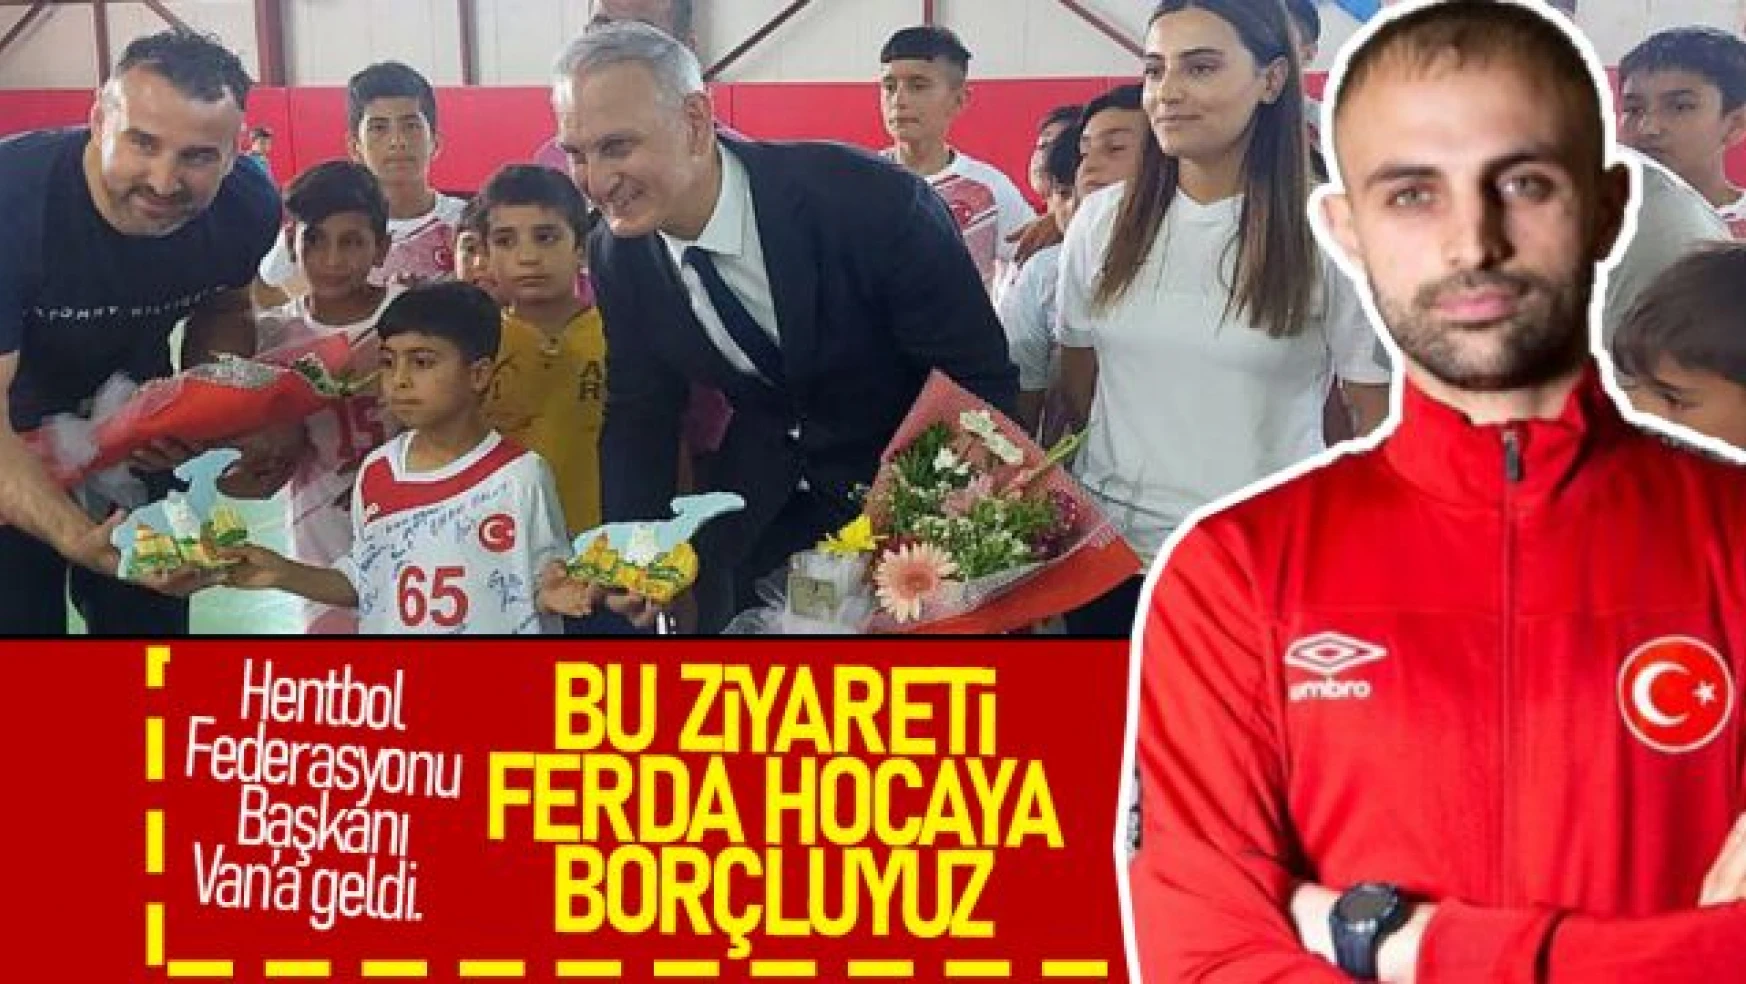 THF Başkanı Kılıç, 10 yaşındaki Serkan'a verdiği maç sözünü yerine getirdi